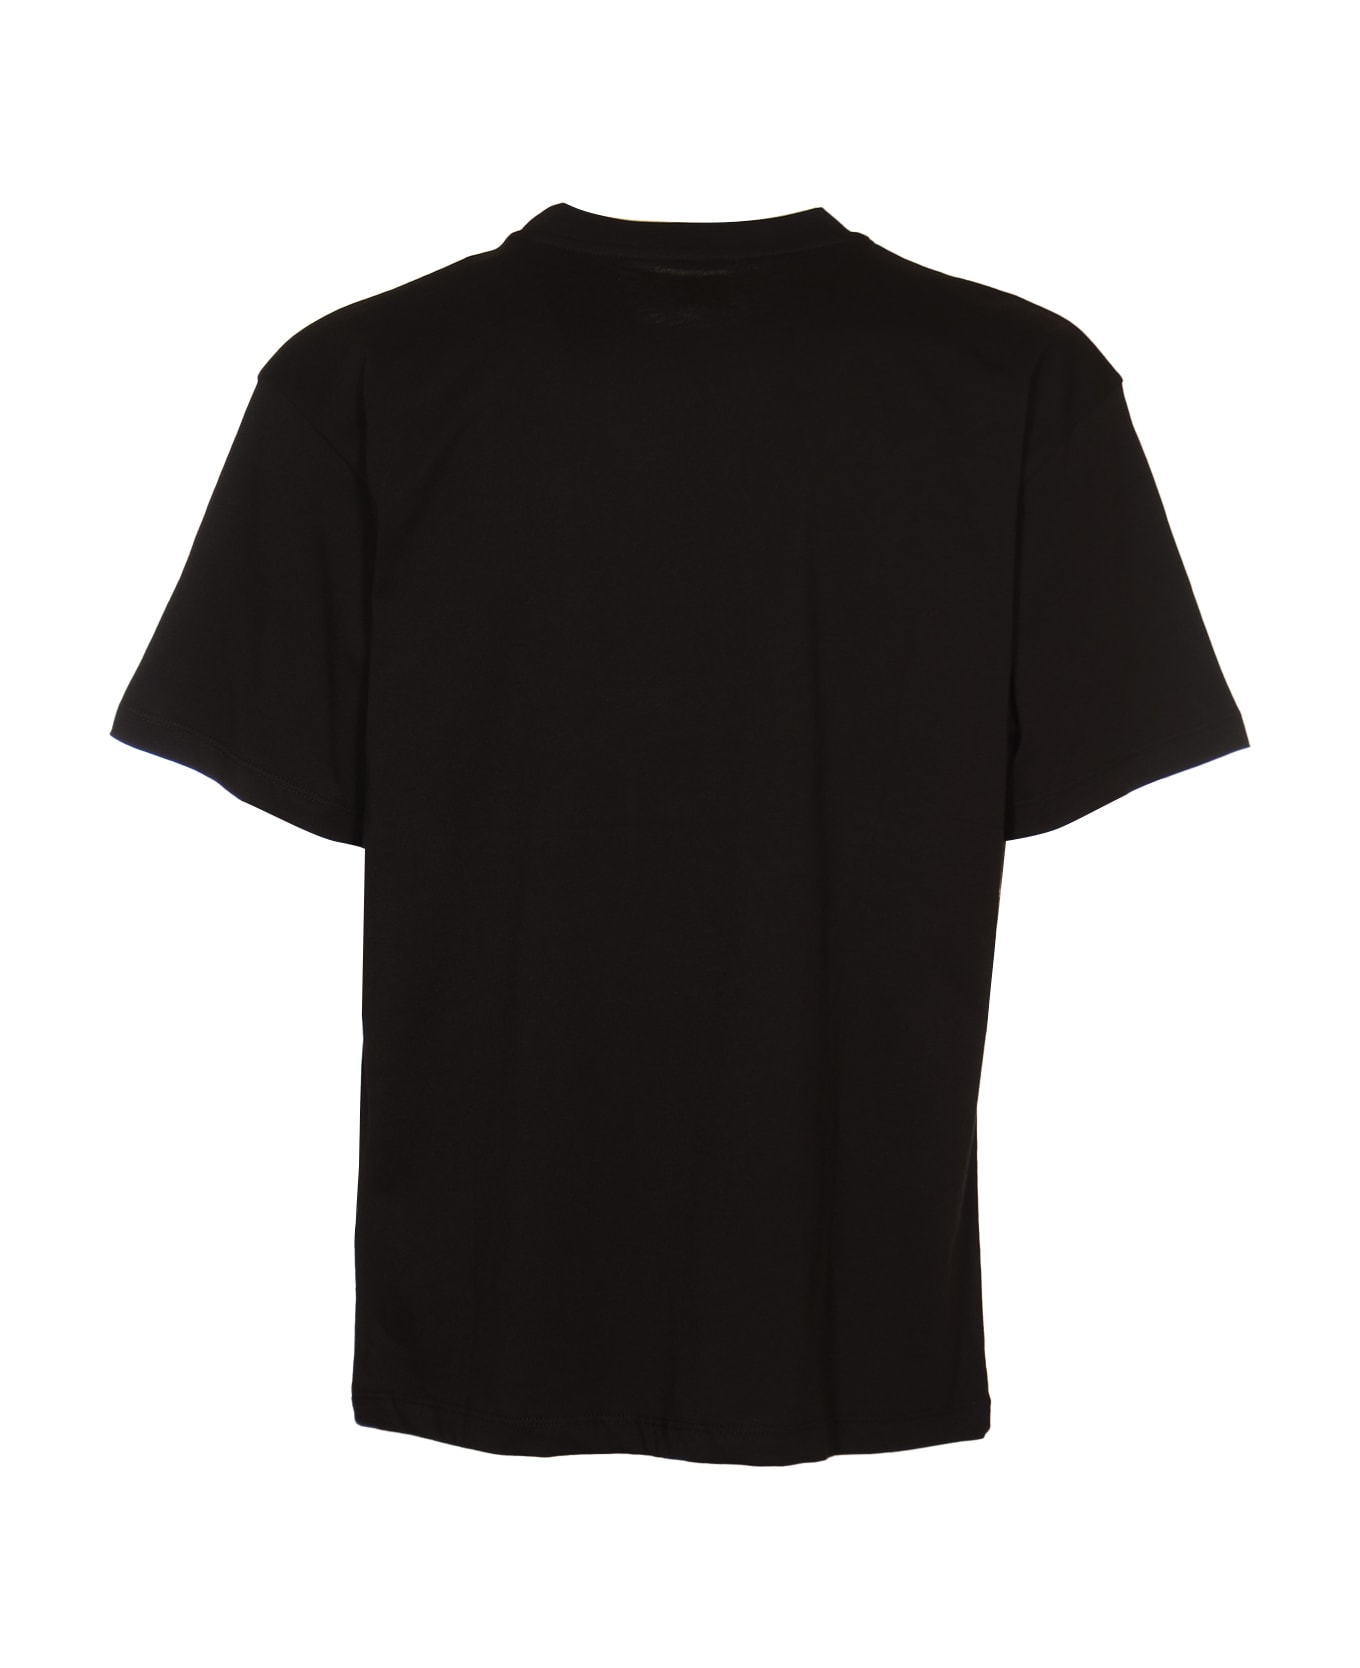 Rassvet Chest Logo Regular T-shirt - Black